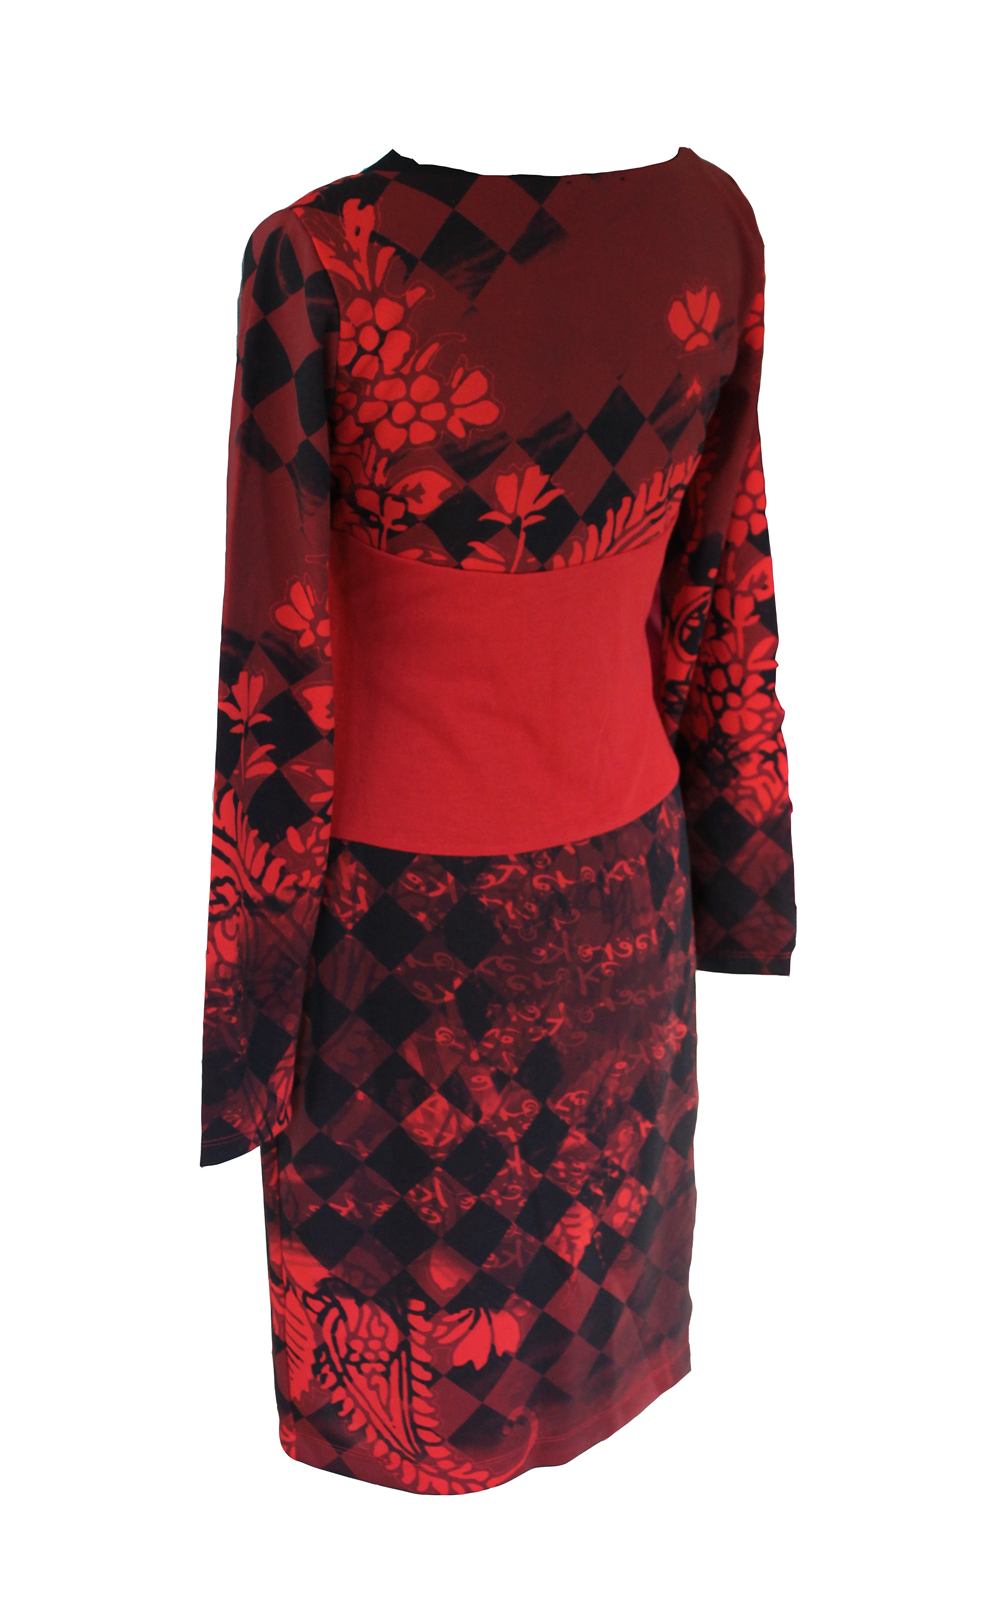 Eroke Italy: Red Hot Diamond Dress (1 Left!)